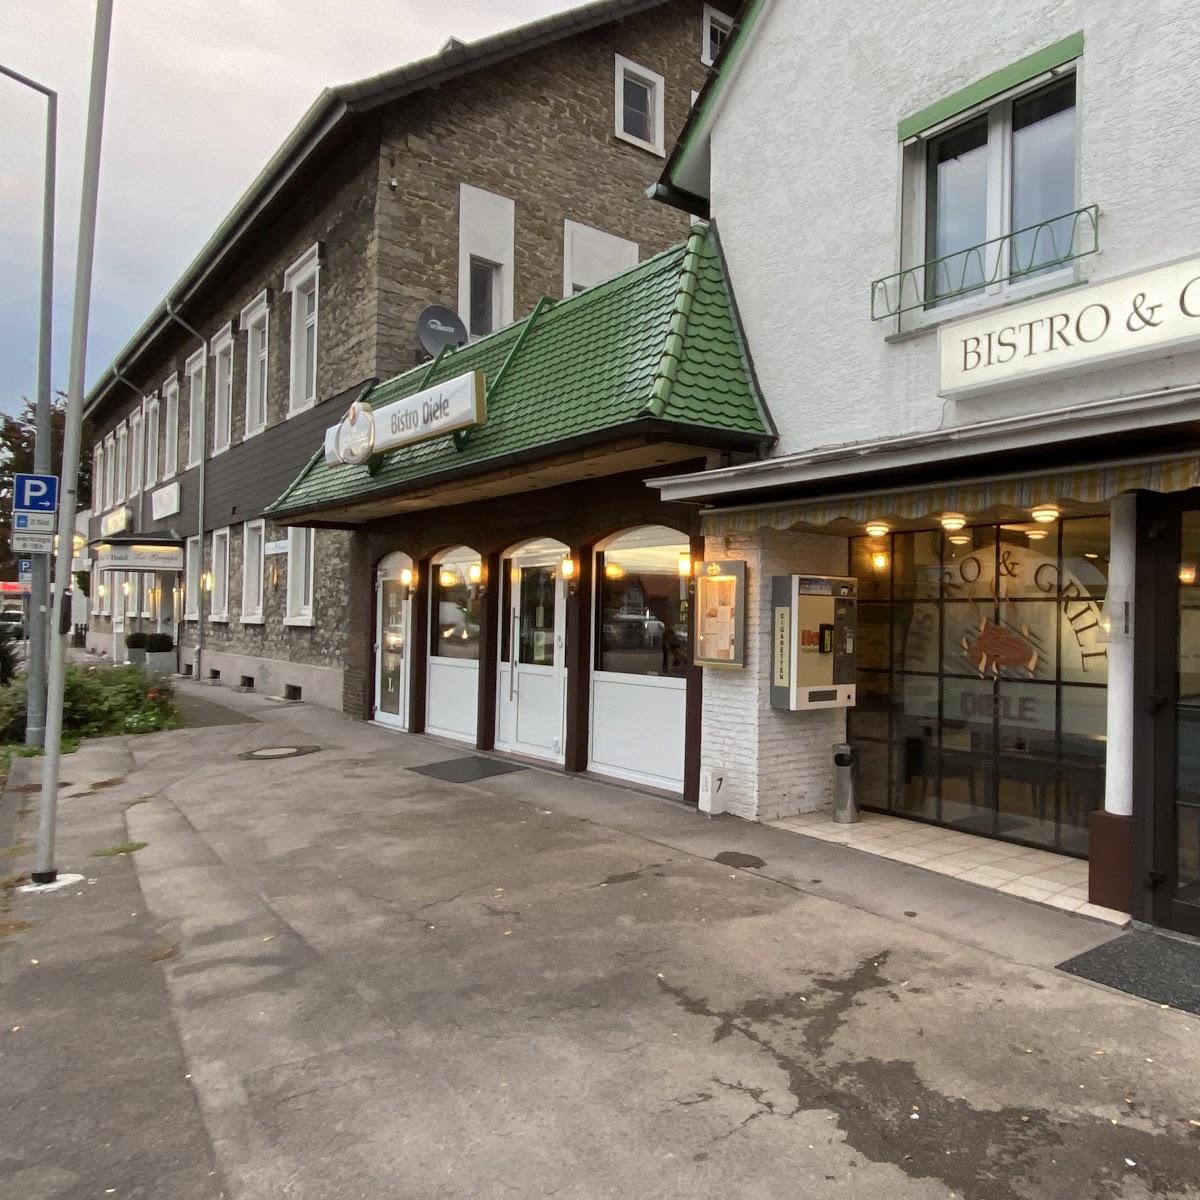 Restaurant "Landhotel Diele & Bistro Grill" in Detmold